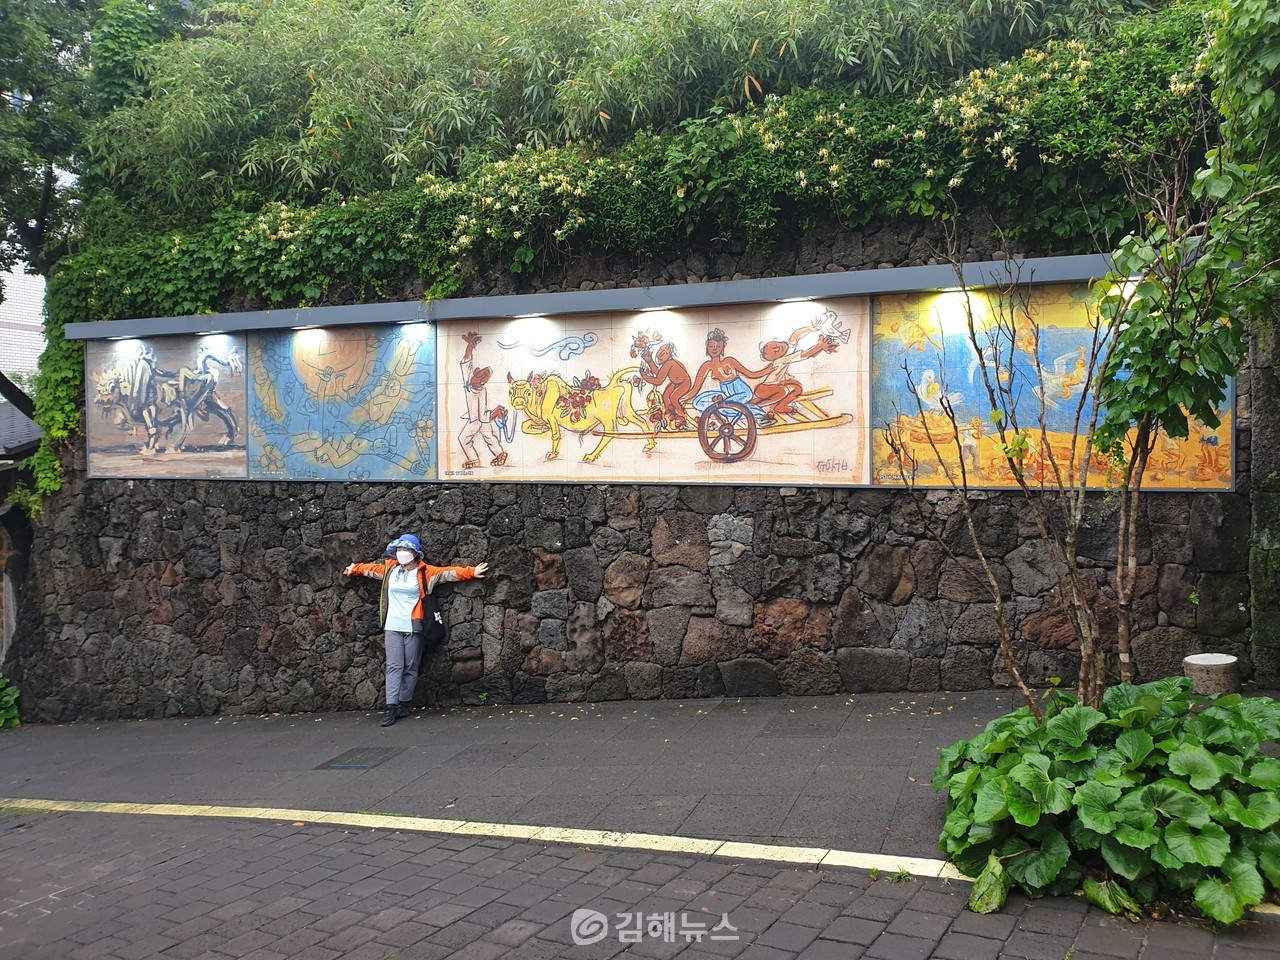 이중섭 거리의 벽화를 배경으로 한 관광객이 사진을 찍는 모습. 이중섭 거리는 서귀포시가 가진 다양한 '미래문화자산' 중 하나다. 이현동 기자